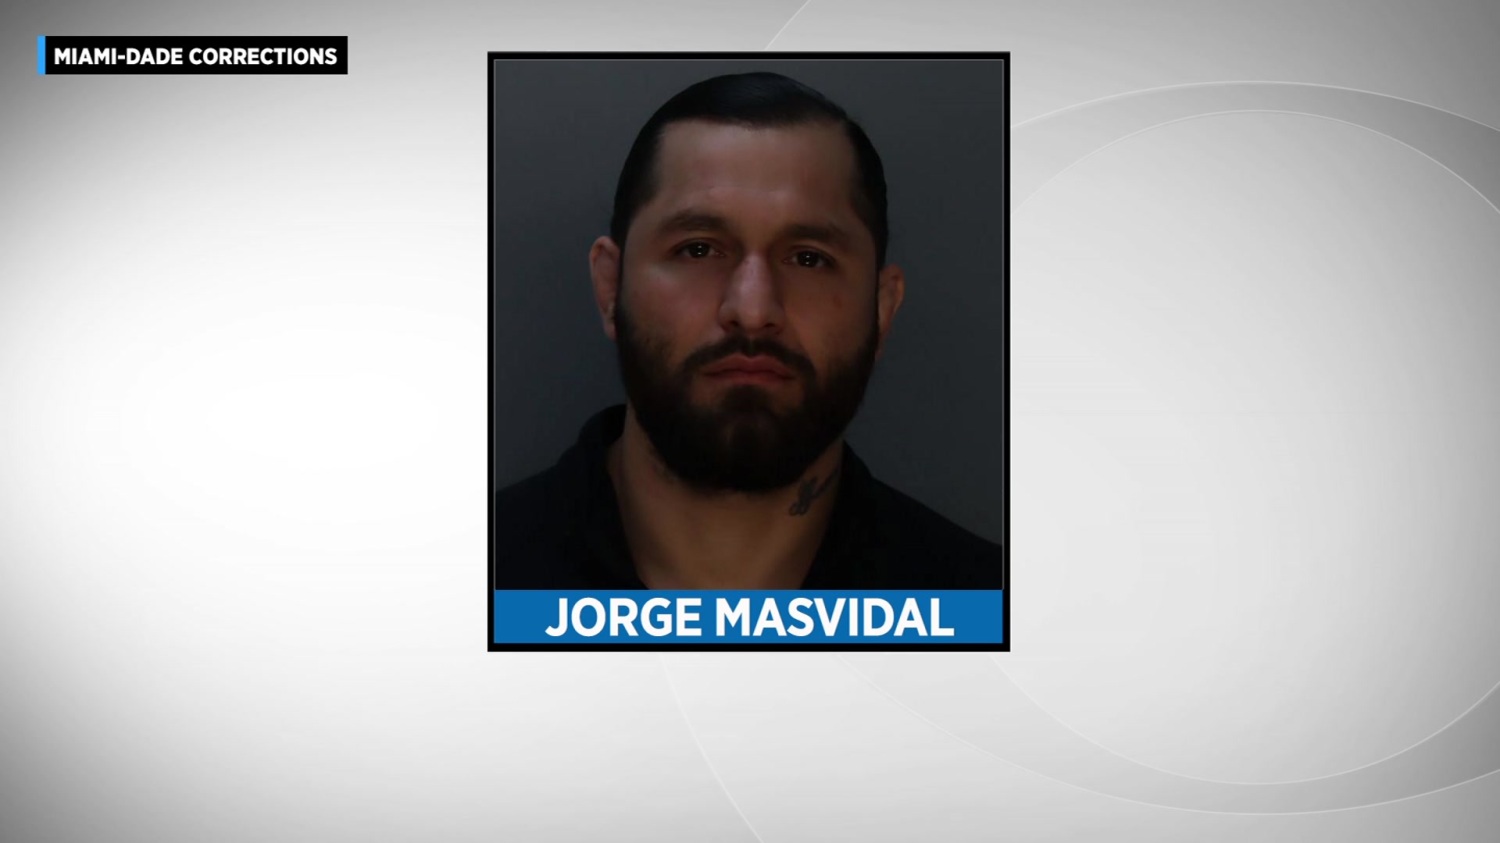 El peleador de UFC Jorge Masvidal encarcelado después de pelea con Colby Covington - CBS Miami